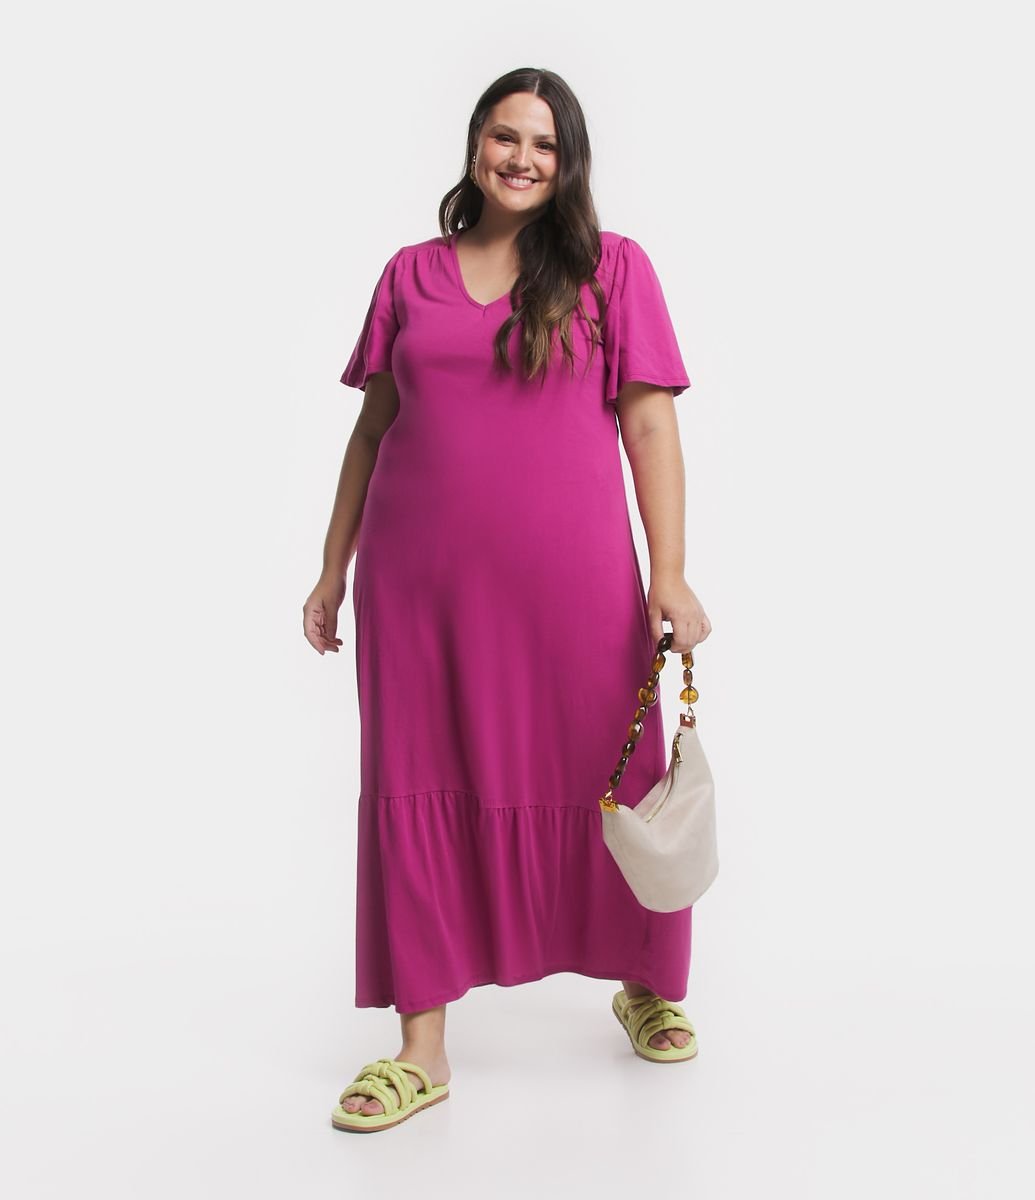 Mini Blusa Rosa Feminina Regata Moda Verão Casual em Chiffon